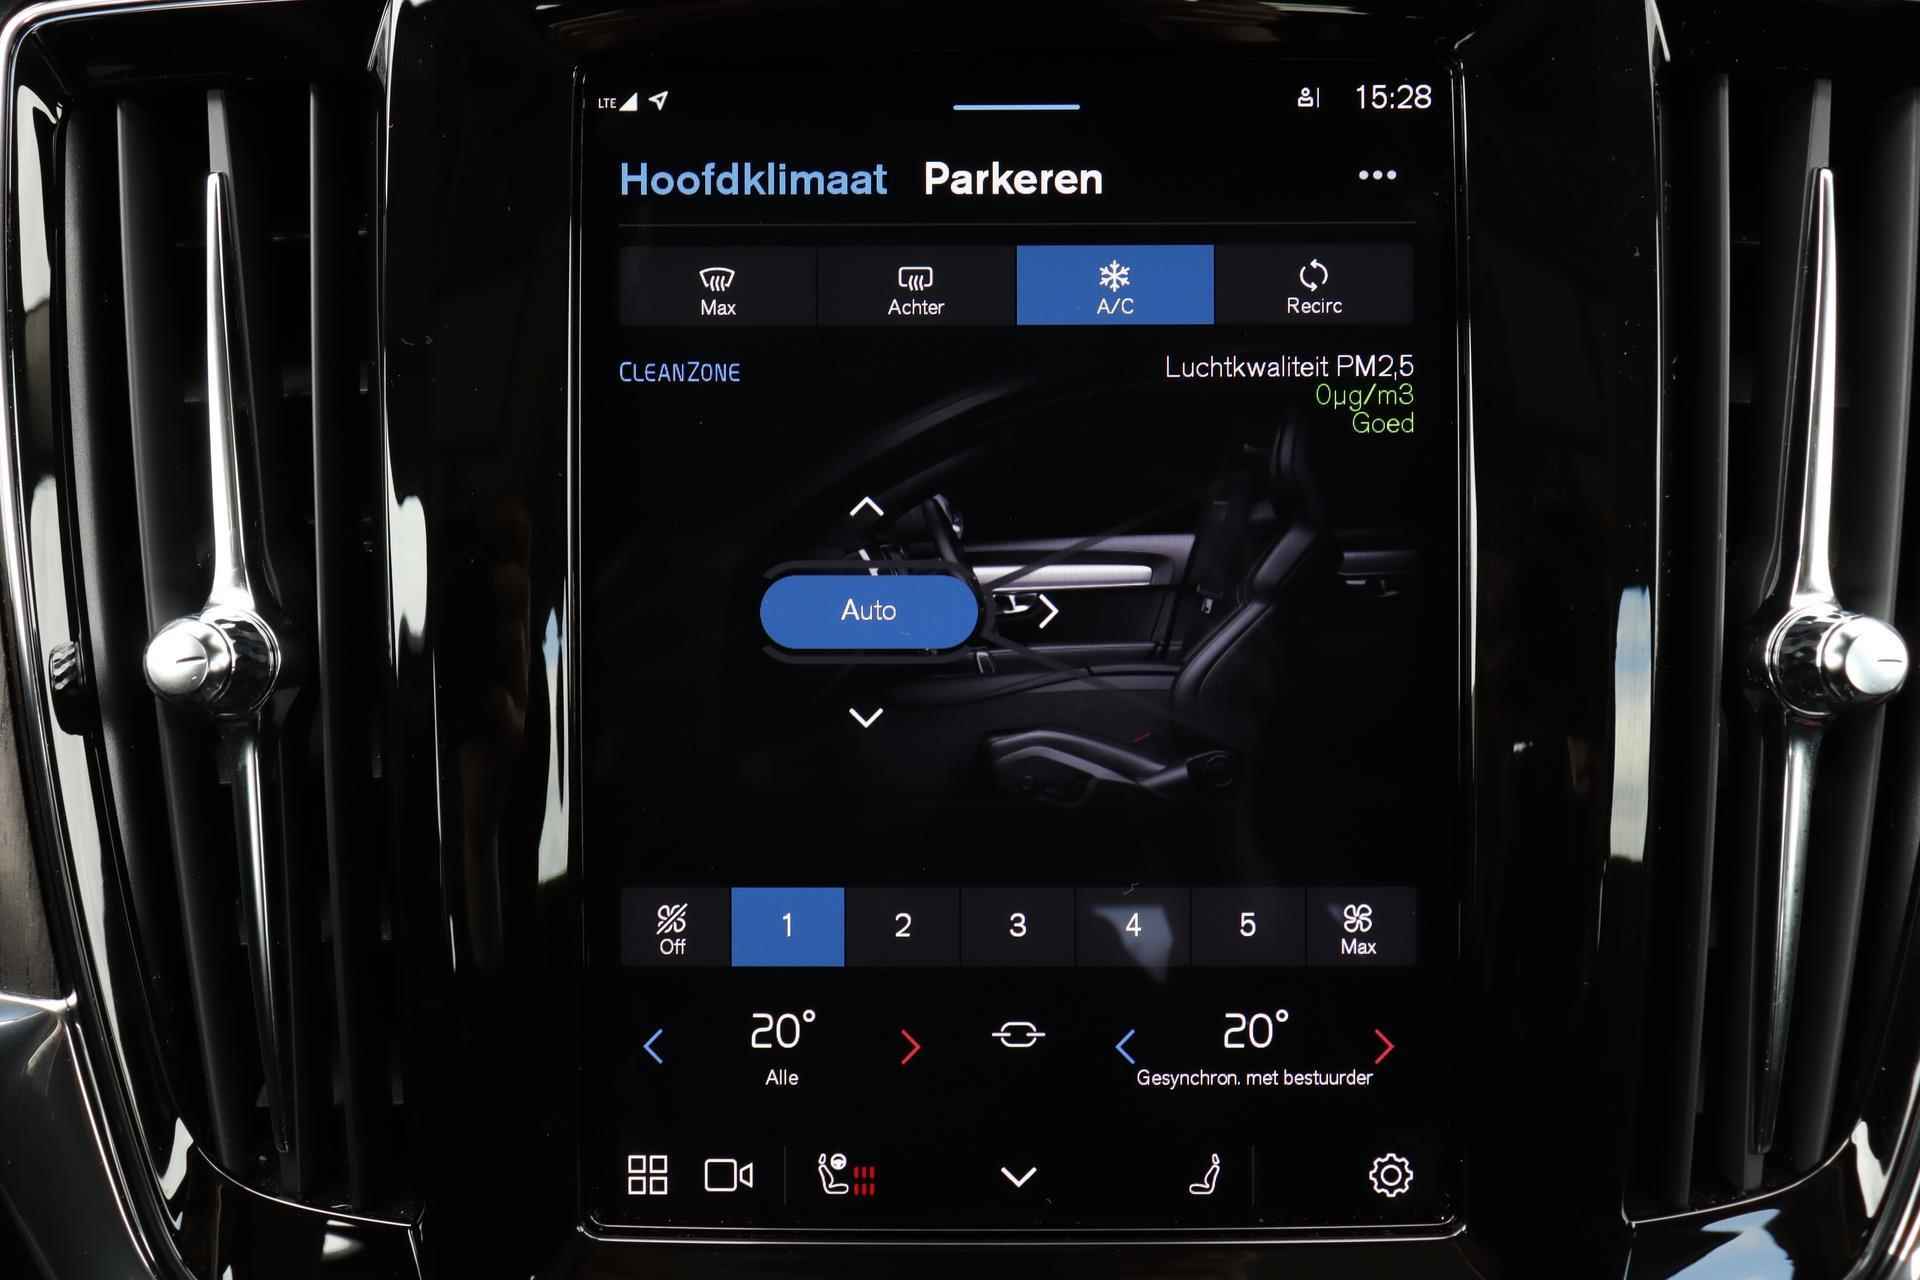 Volvo V90 T6 AWD Recharge Inscription - Panorama/schuifdak - IntelliSafe Assist & Surround - Harman/Kardon audio - Adaptieve LED koplampen - Parkeercamera achter - Verwarmde voorstoelen & stuur - Parkeersensoren voor & achter - Elektr. bedienb. voorstoelen met geheugen - Standkachel - 19' LMV - 12/33